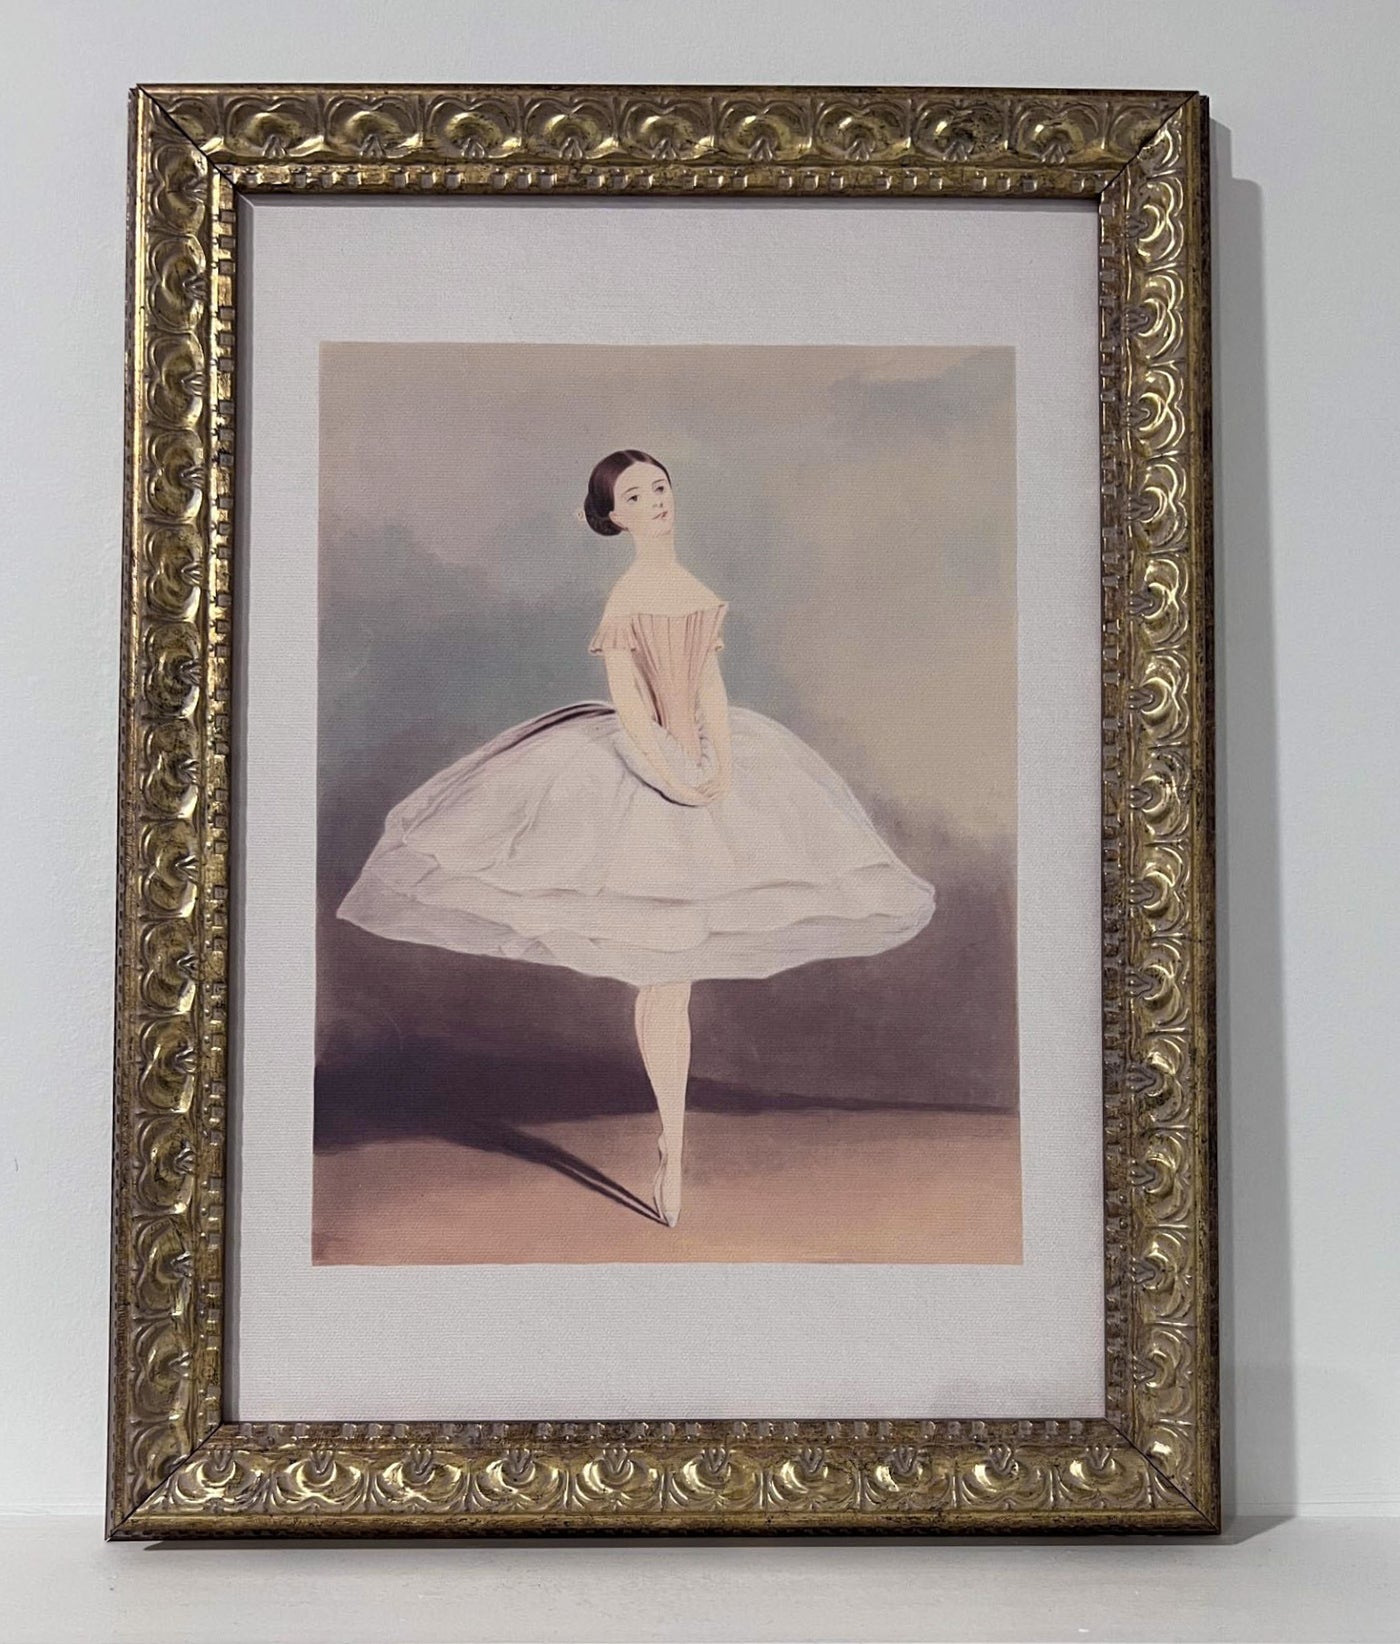 12" x 16" Framed Artwork - Ballerina